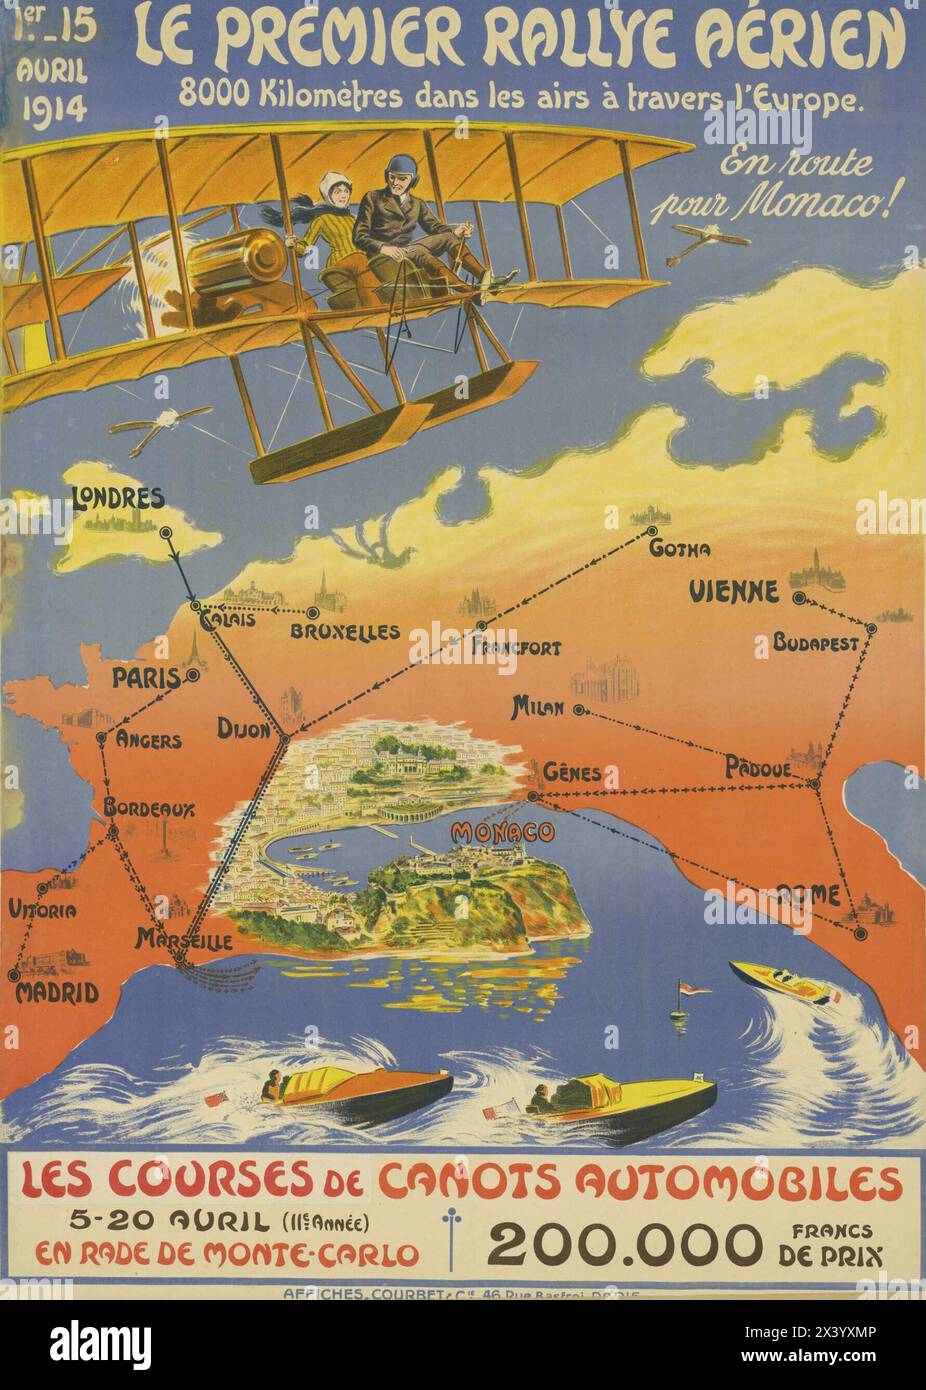 Französisches Vintage-Werbeplakat: "Le Premier Rallye aérien" , die erste Luftrallye, mit europäischer Karte, die Route und ein fliegendes Flugzeug aus der Ära zeigt. 1914 Stockfoto